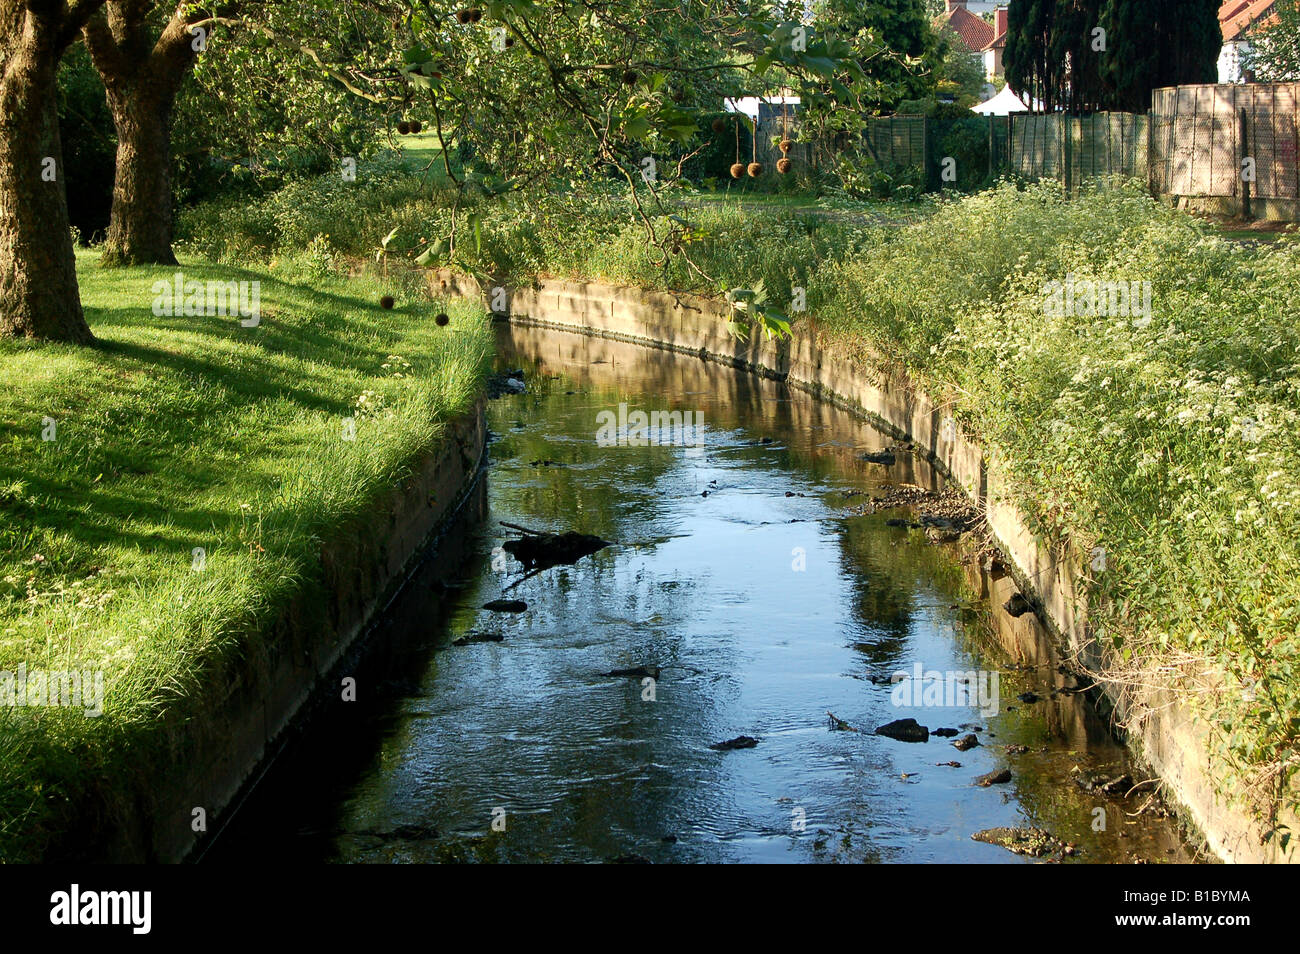 Un canal qui coule dans la région de Barnet, Barnet, London Pk Banque D'Images